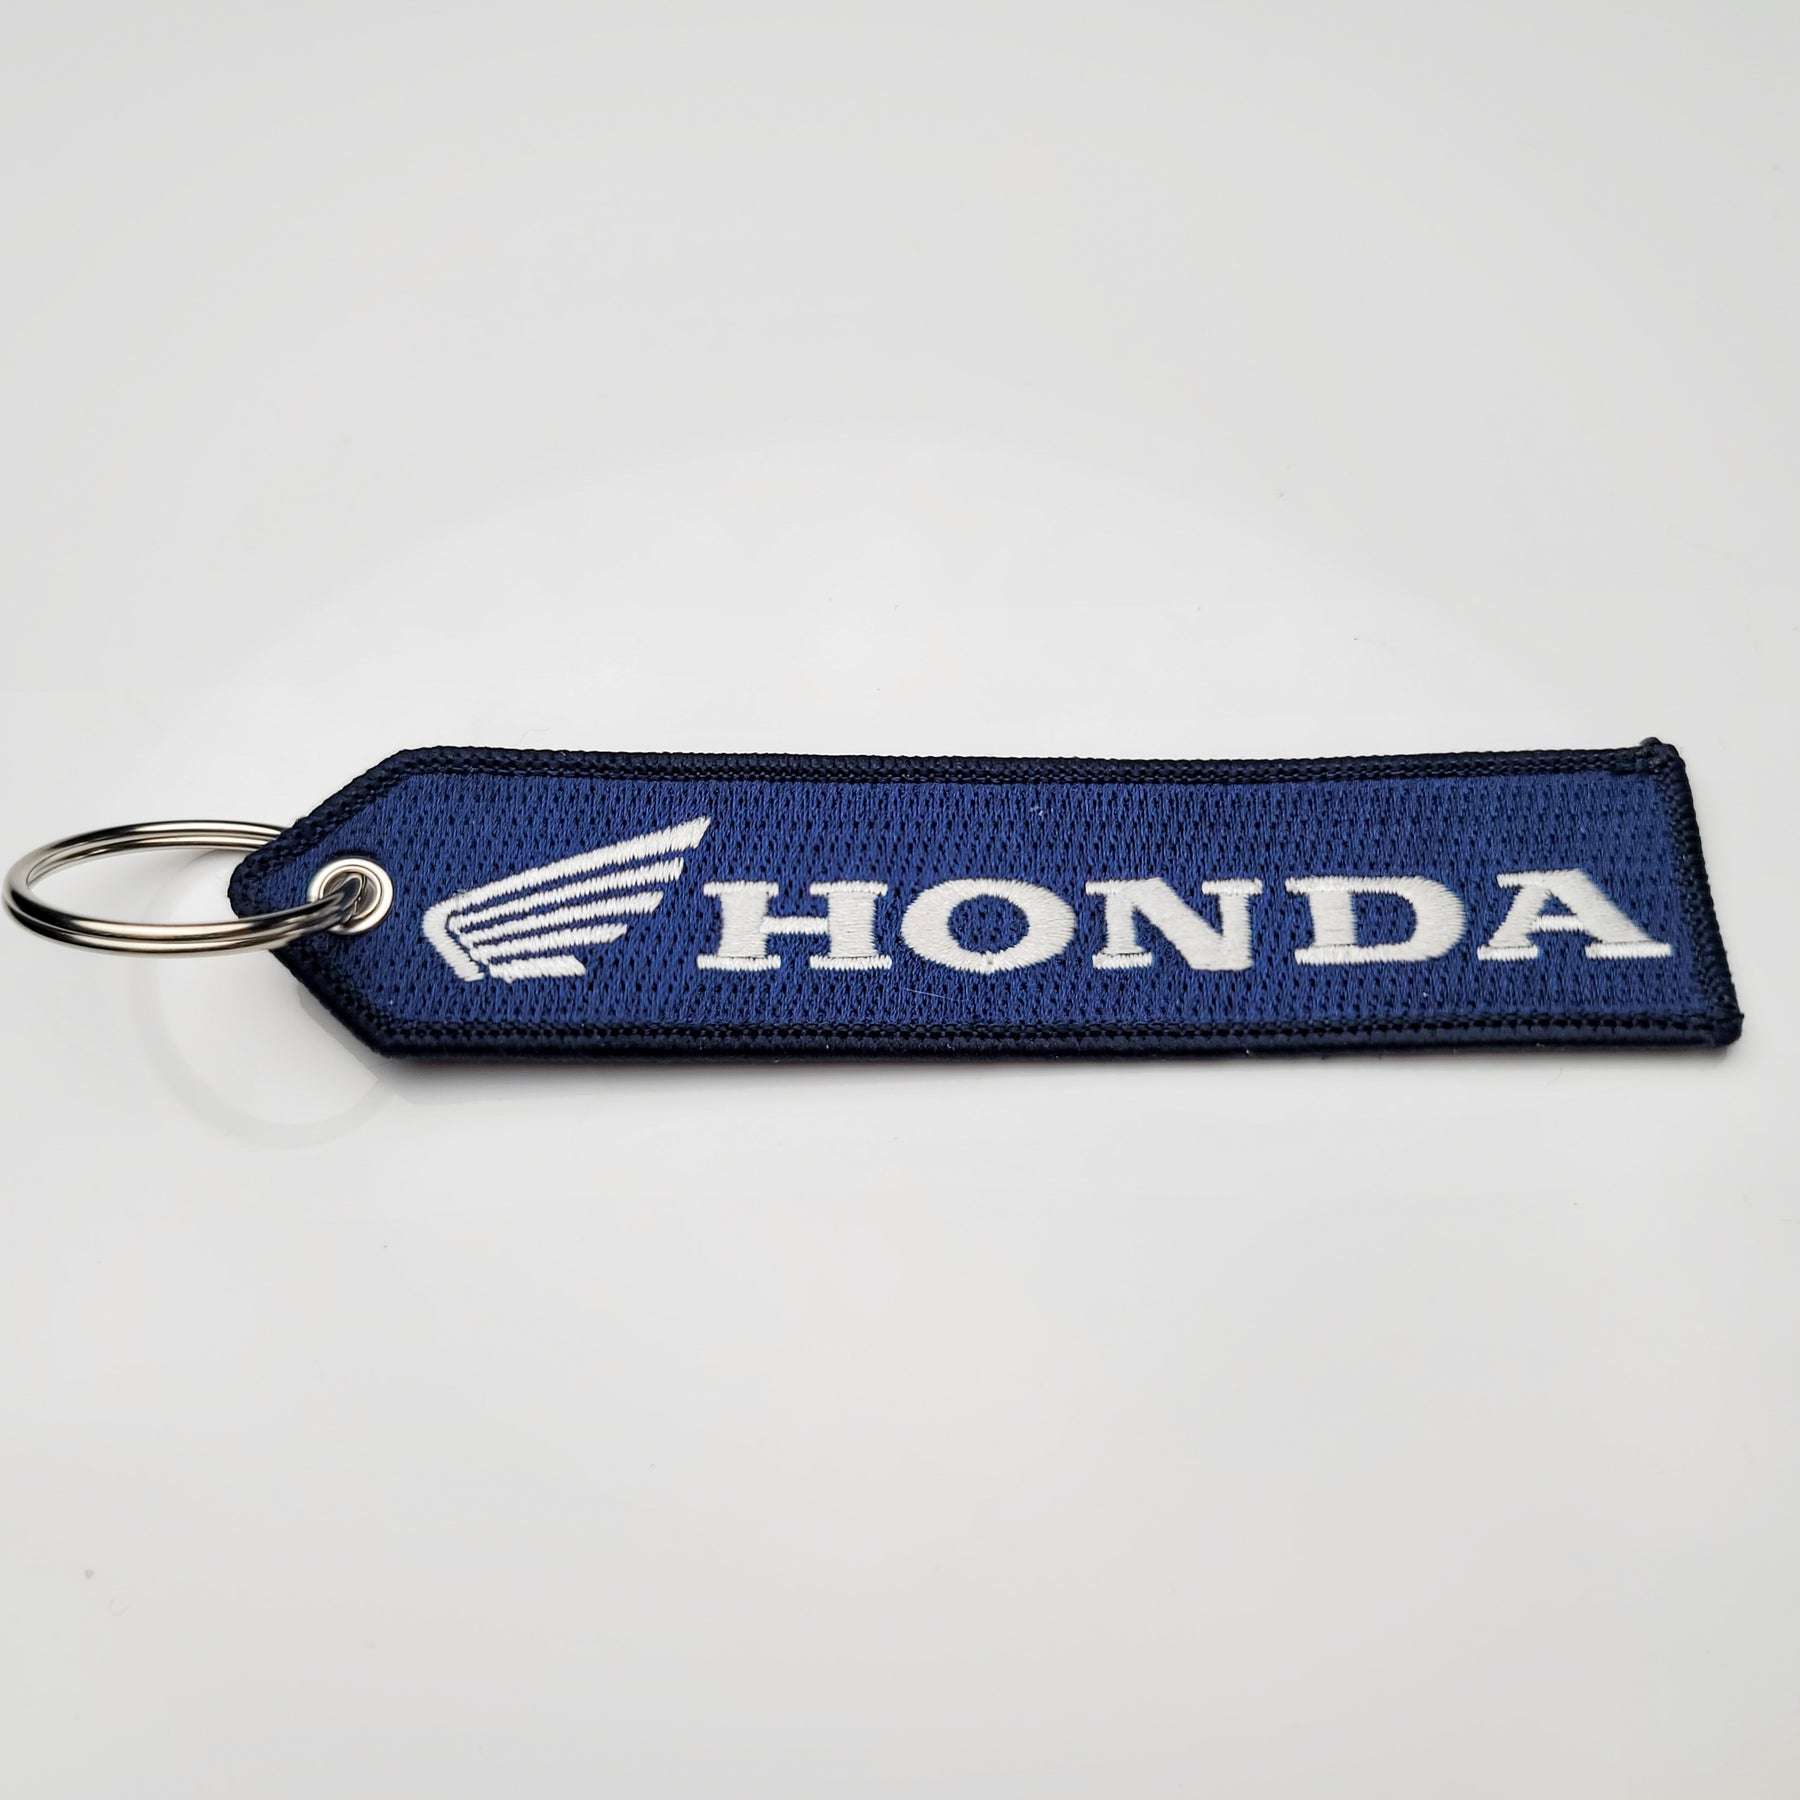 Honda Civic Type R Keychain - 8240435 - College Hills Honda